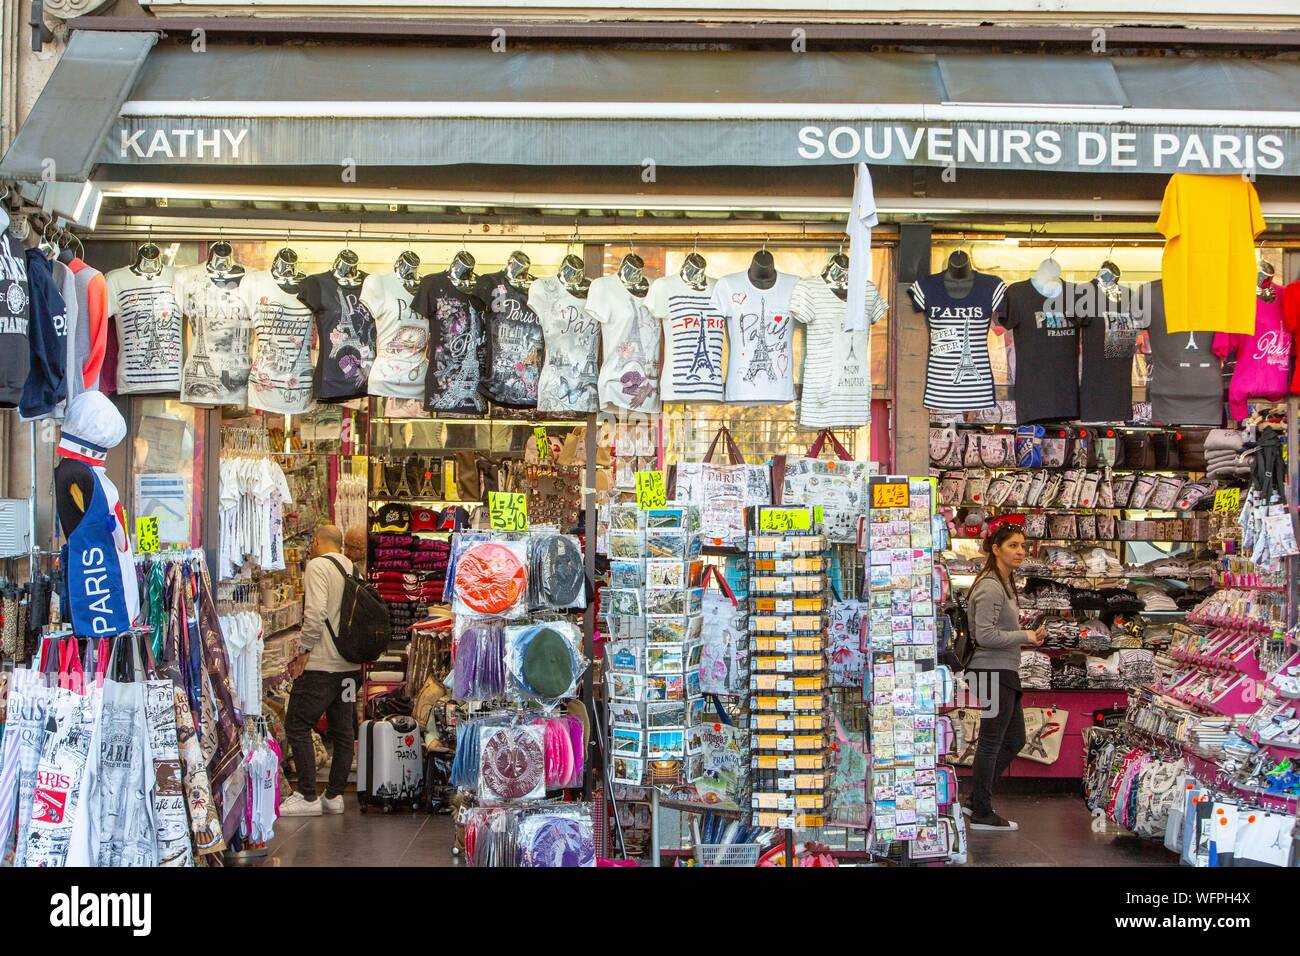 France, Paris, souvenir shop for tourists Stock Photo